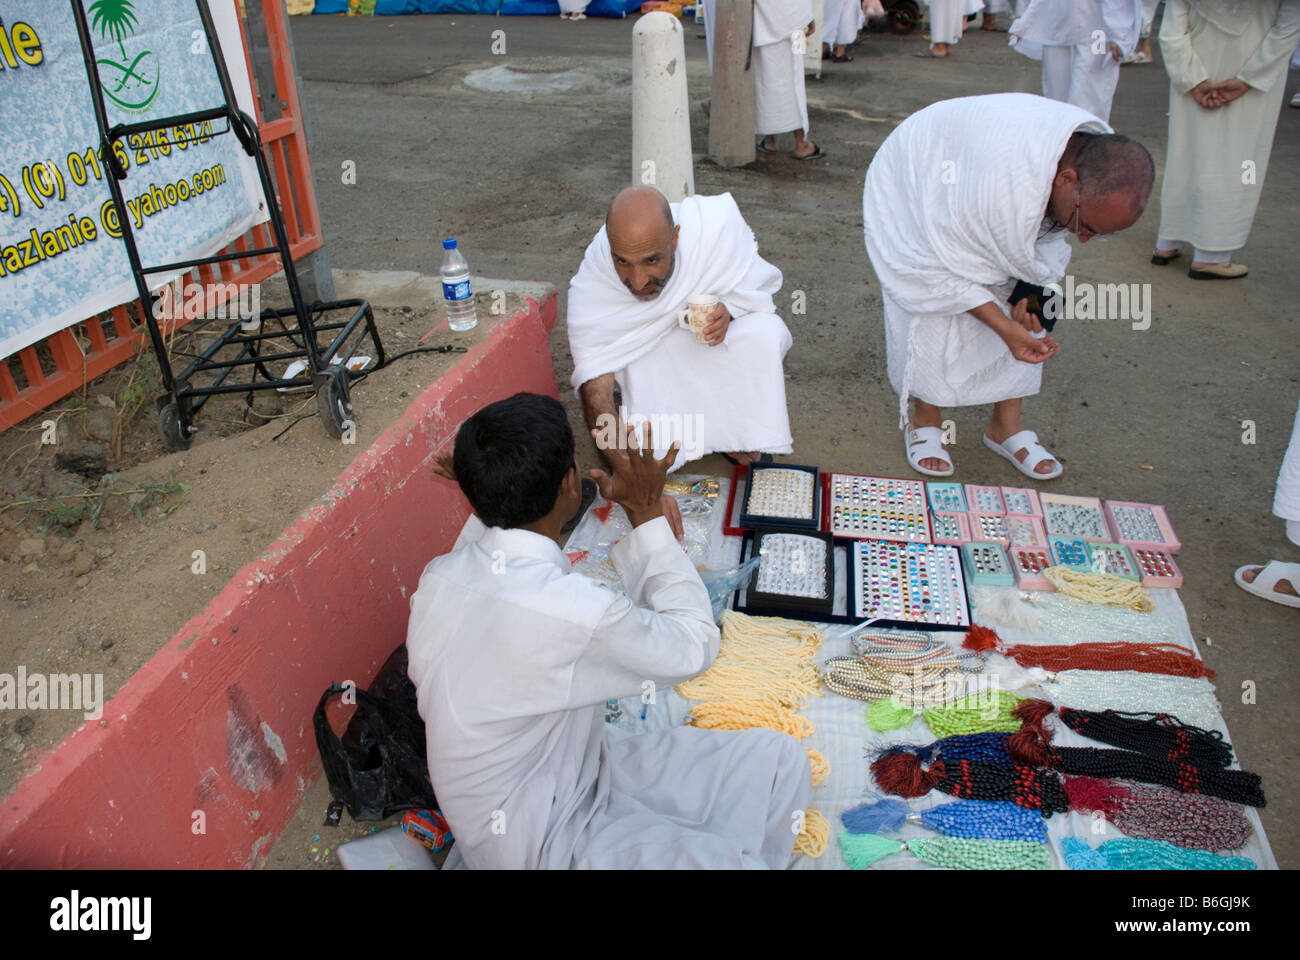 Two muslim pilgrims looking at prayer beads and rings at street sellers Makkah Saudi Arabia Stock Photo